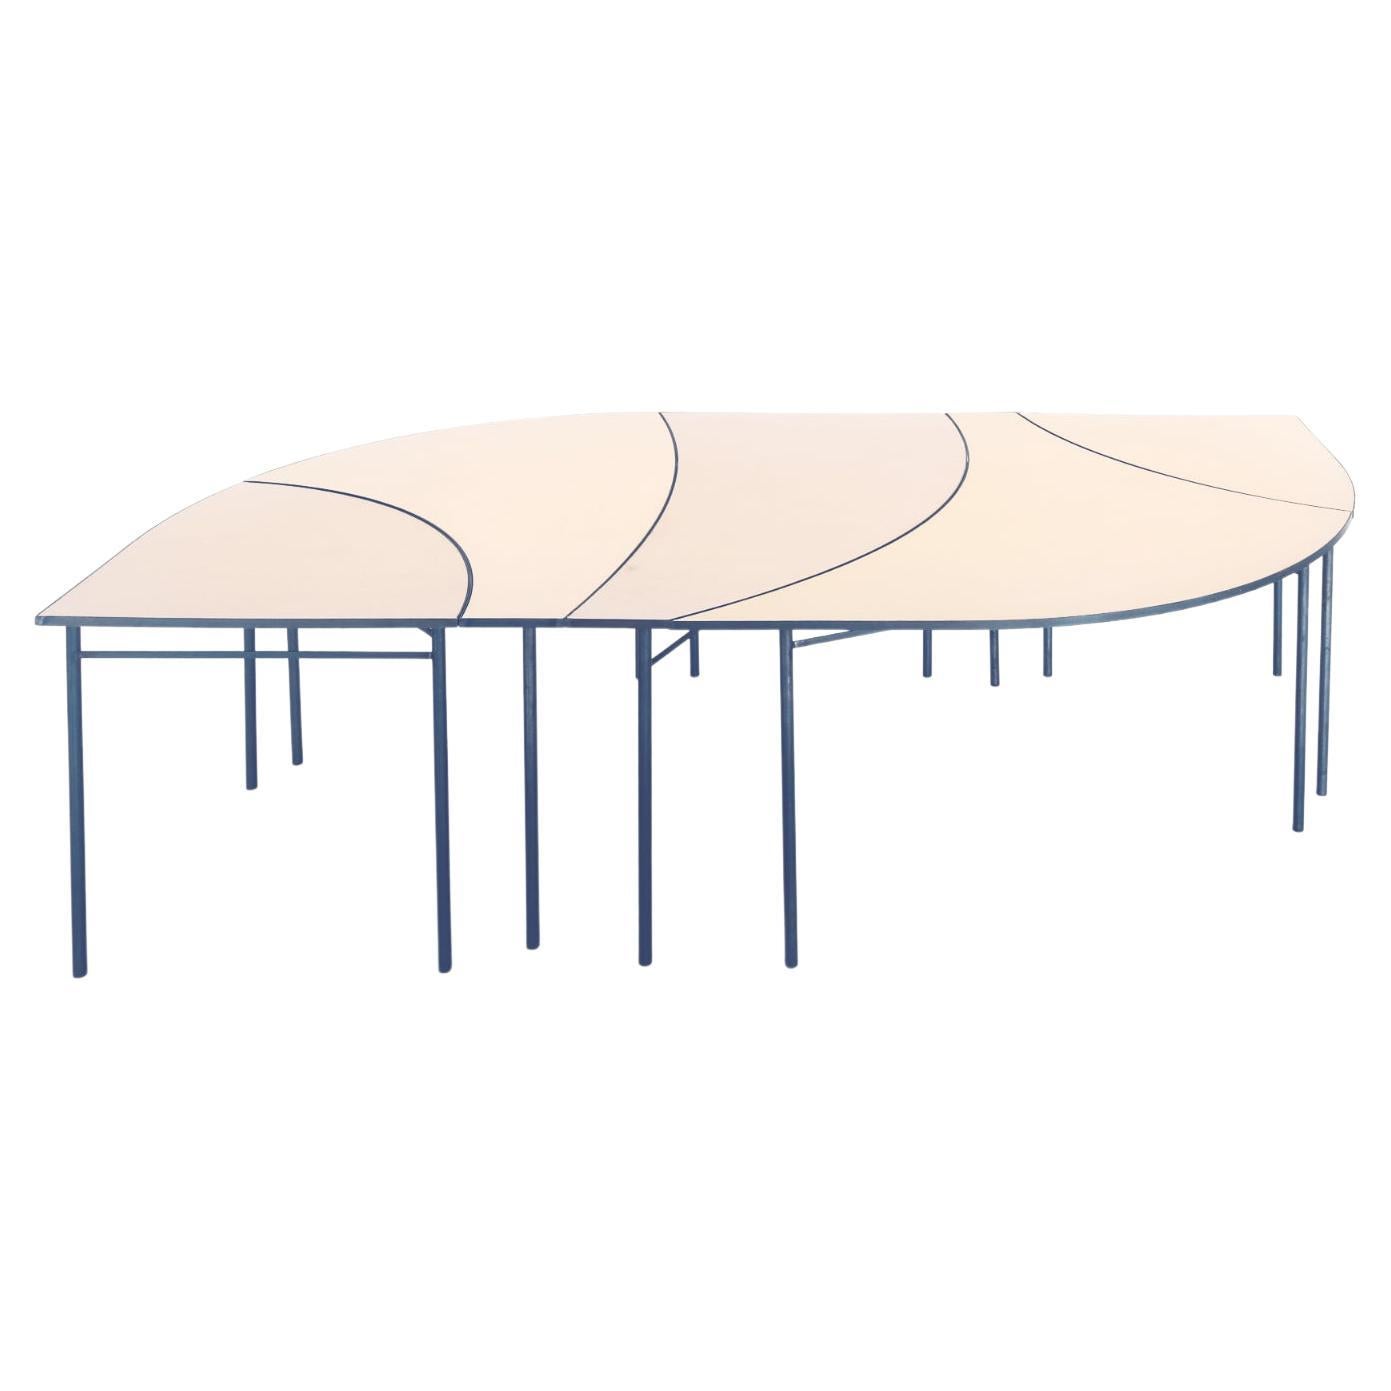 Blue Tabula 'Non' Rasa Table Set by Studio Traccia For Sale